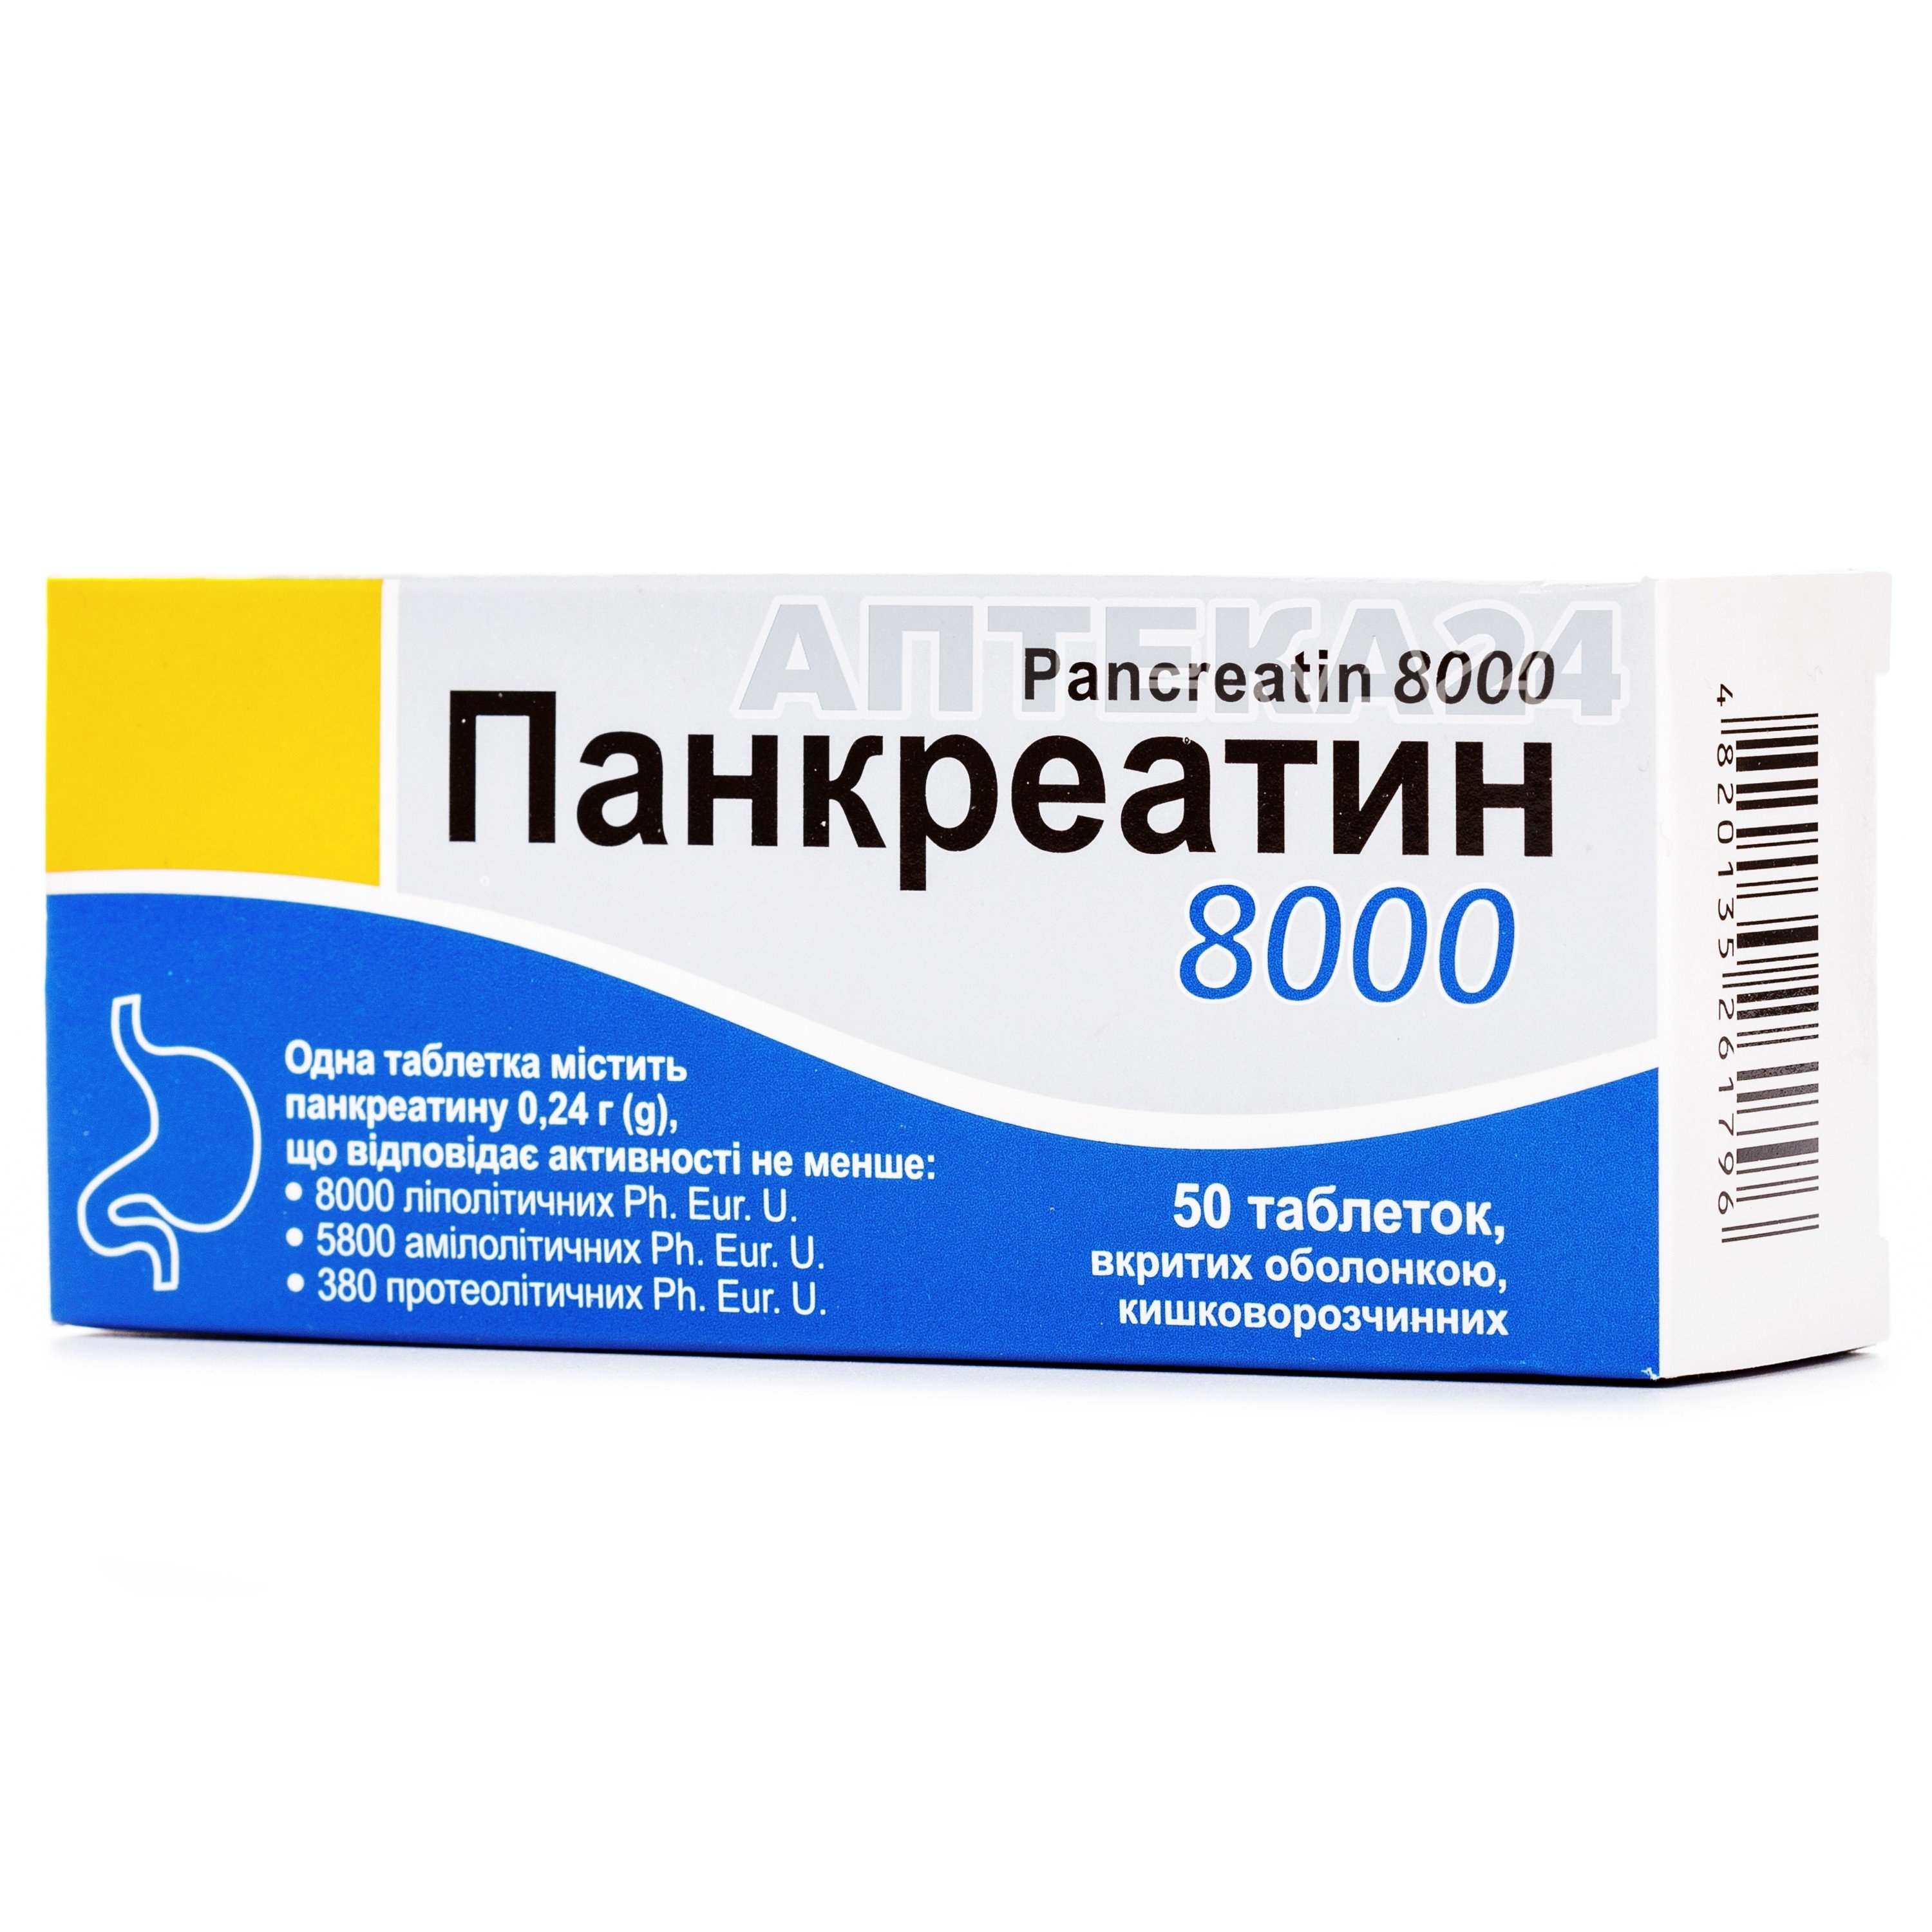 Панкреатин Цена Таблетки 60 Штук